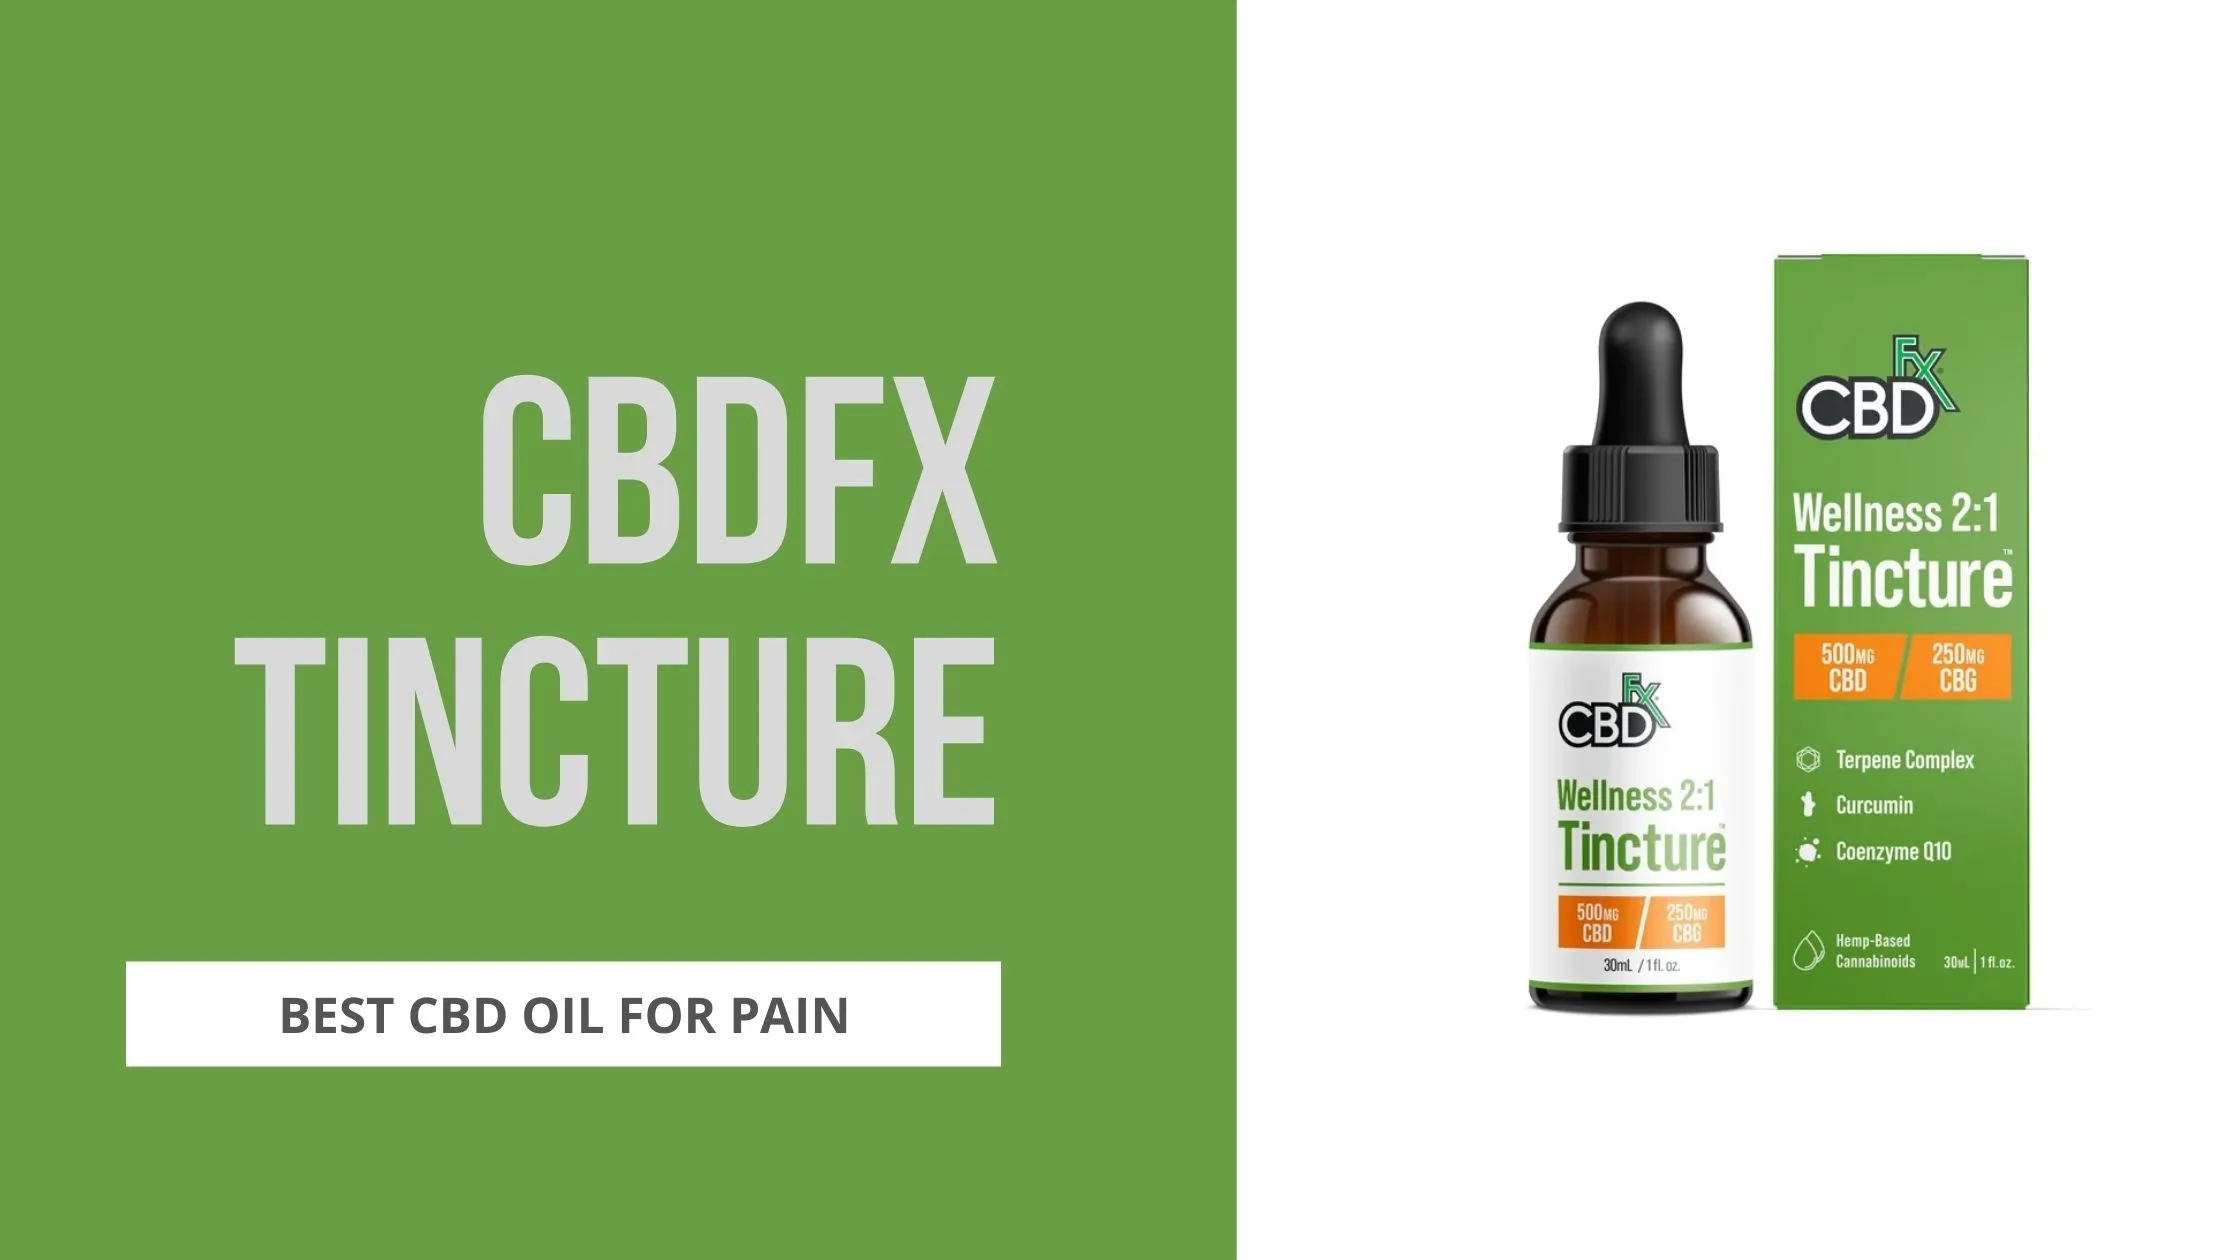 cbdfx tincture best cbd oil for pain